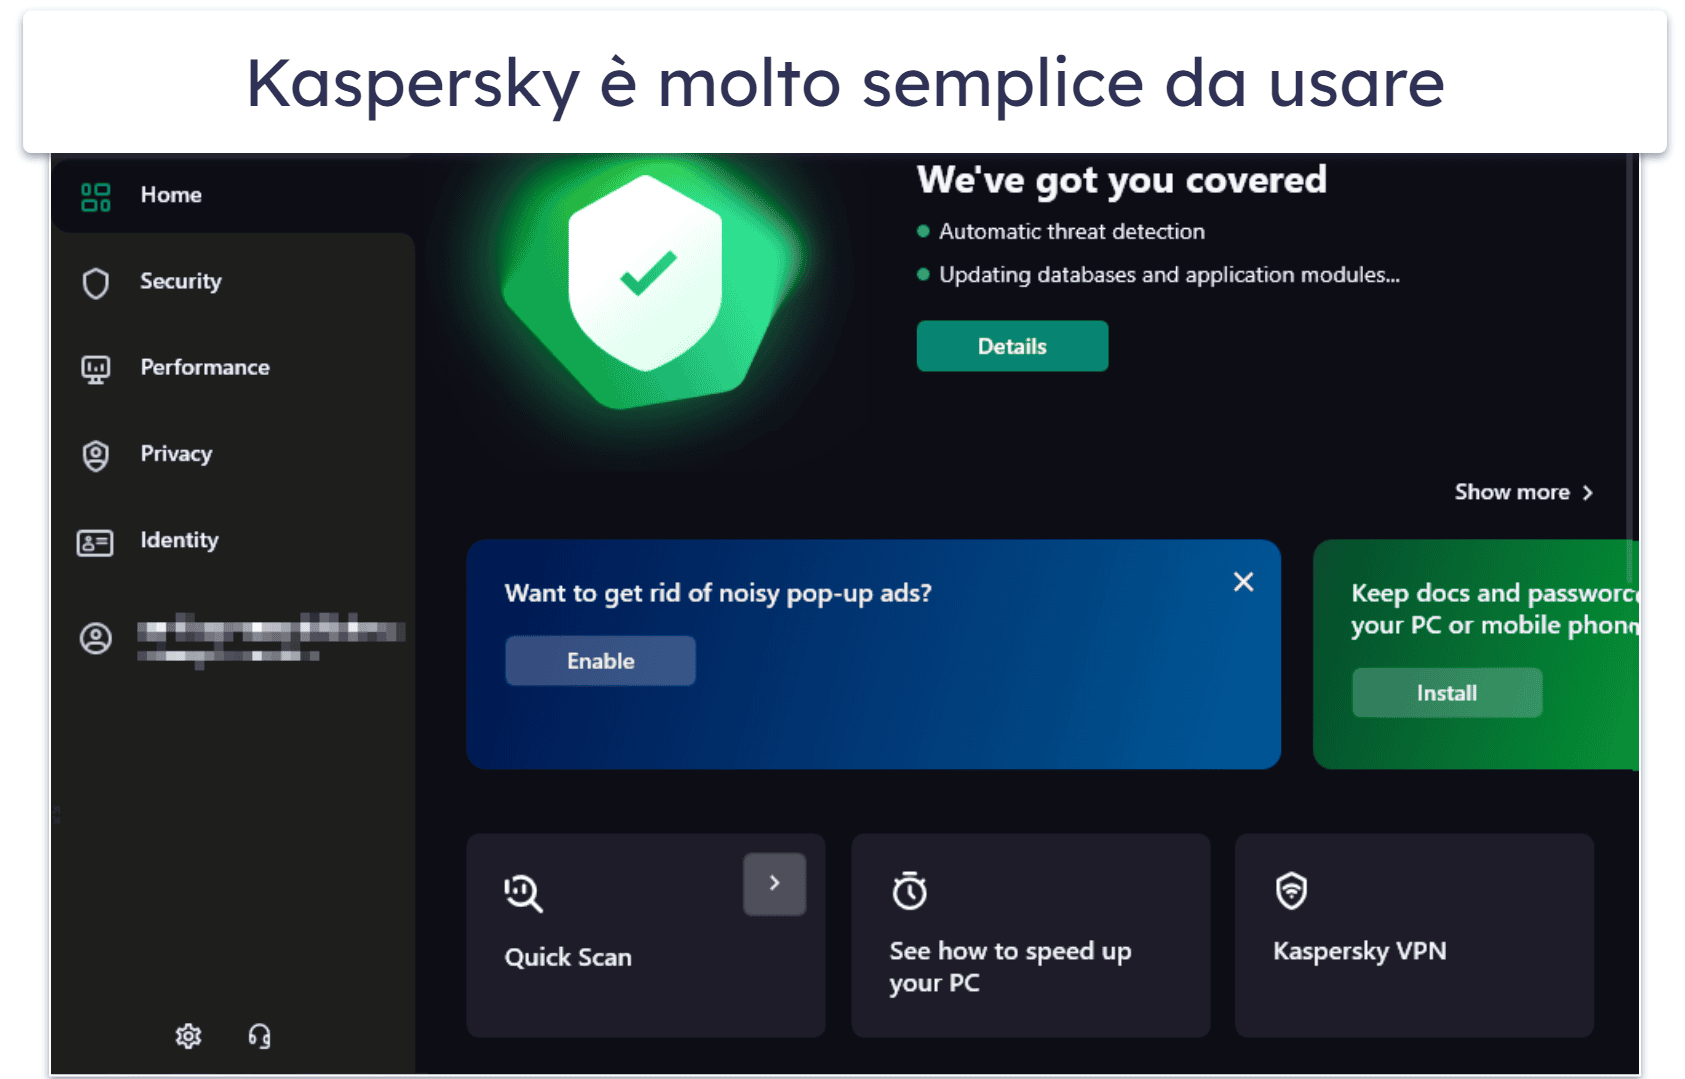 8. Kaspersky Premium — Il migliore per la facilità di utilizzo